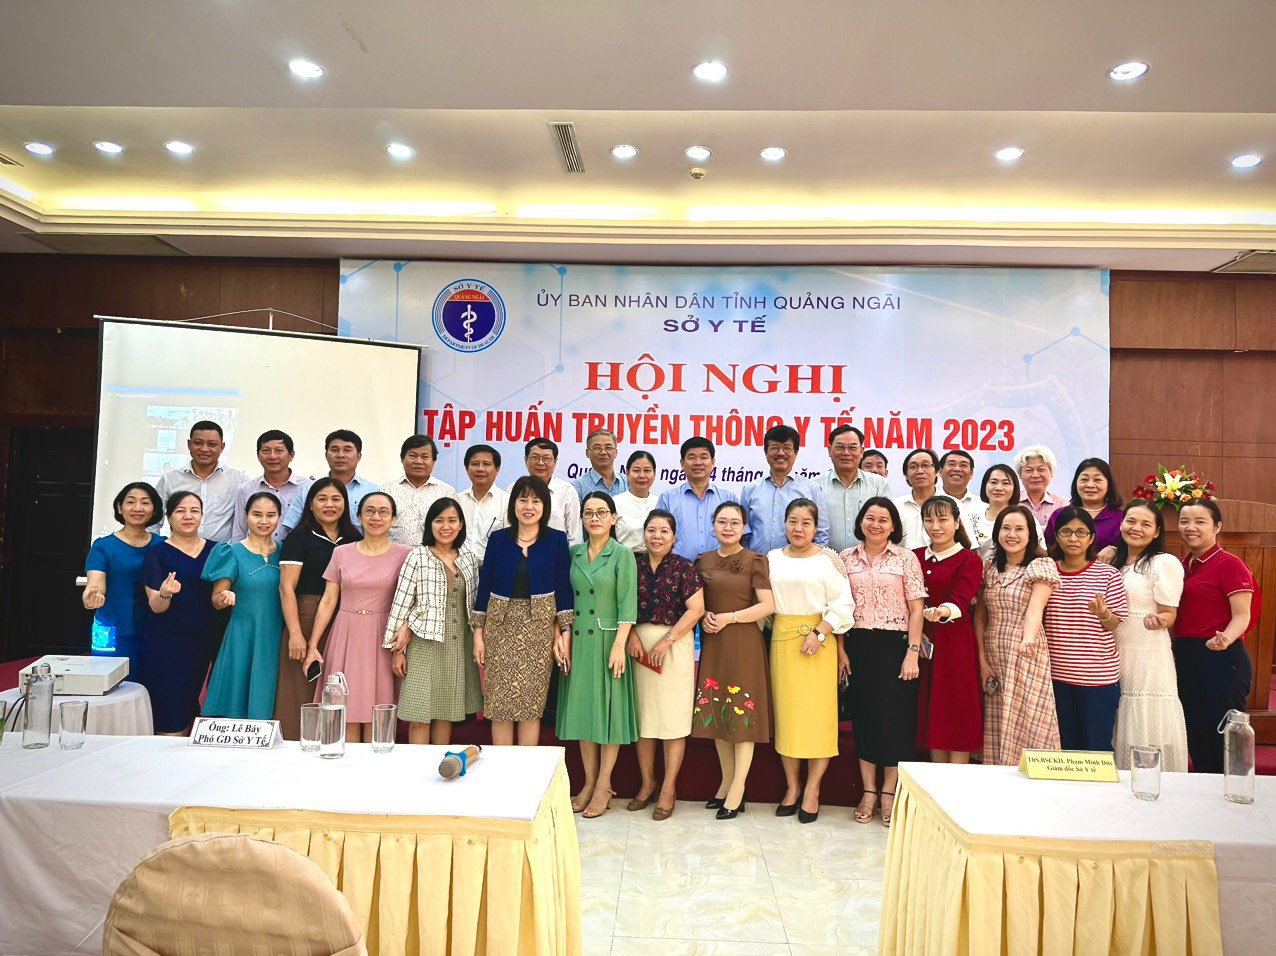 Sở Y tế tỉnh Quảng Ngãi tổ chức hội nghị tập huấn truyền thông Y tế năm 2023